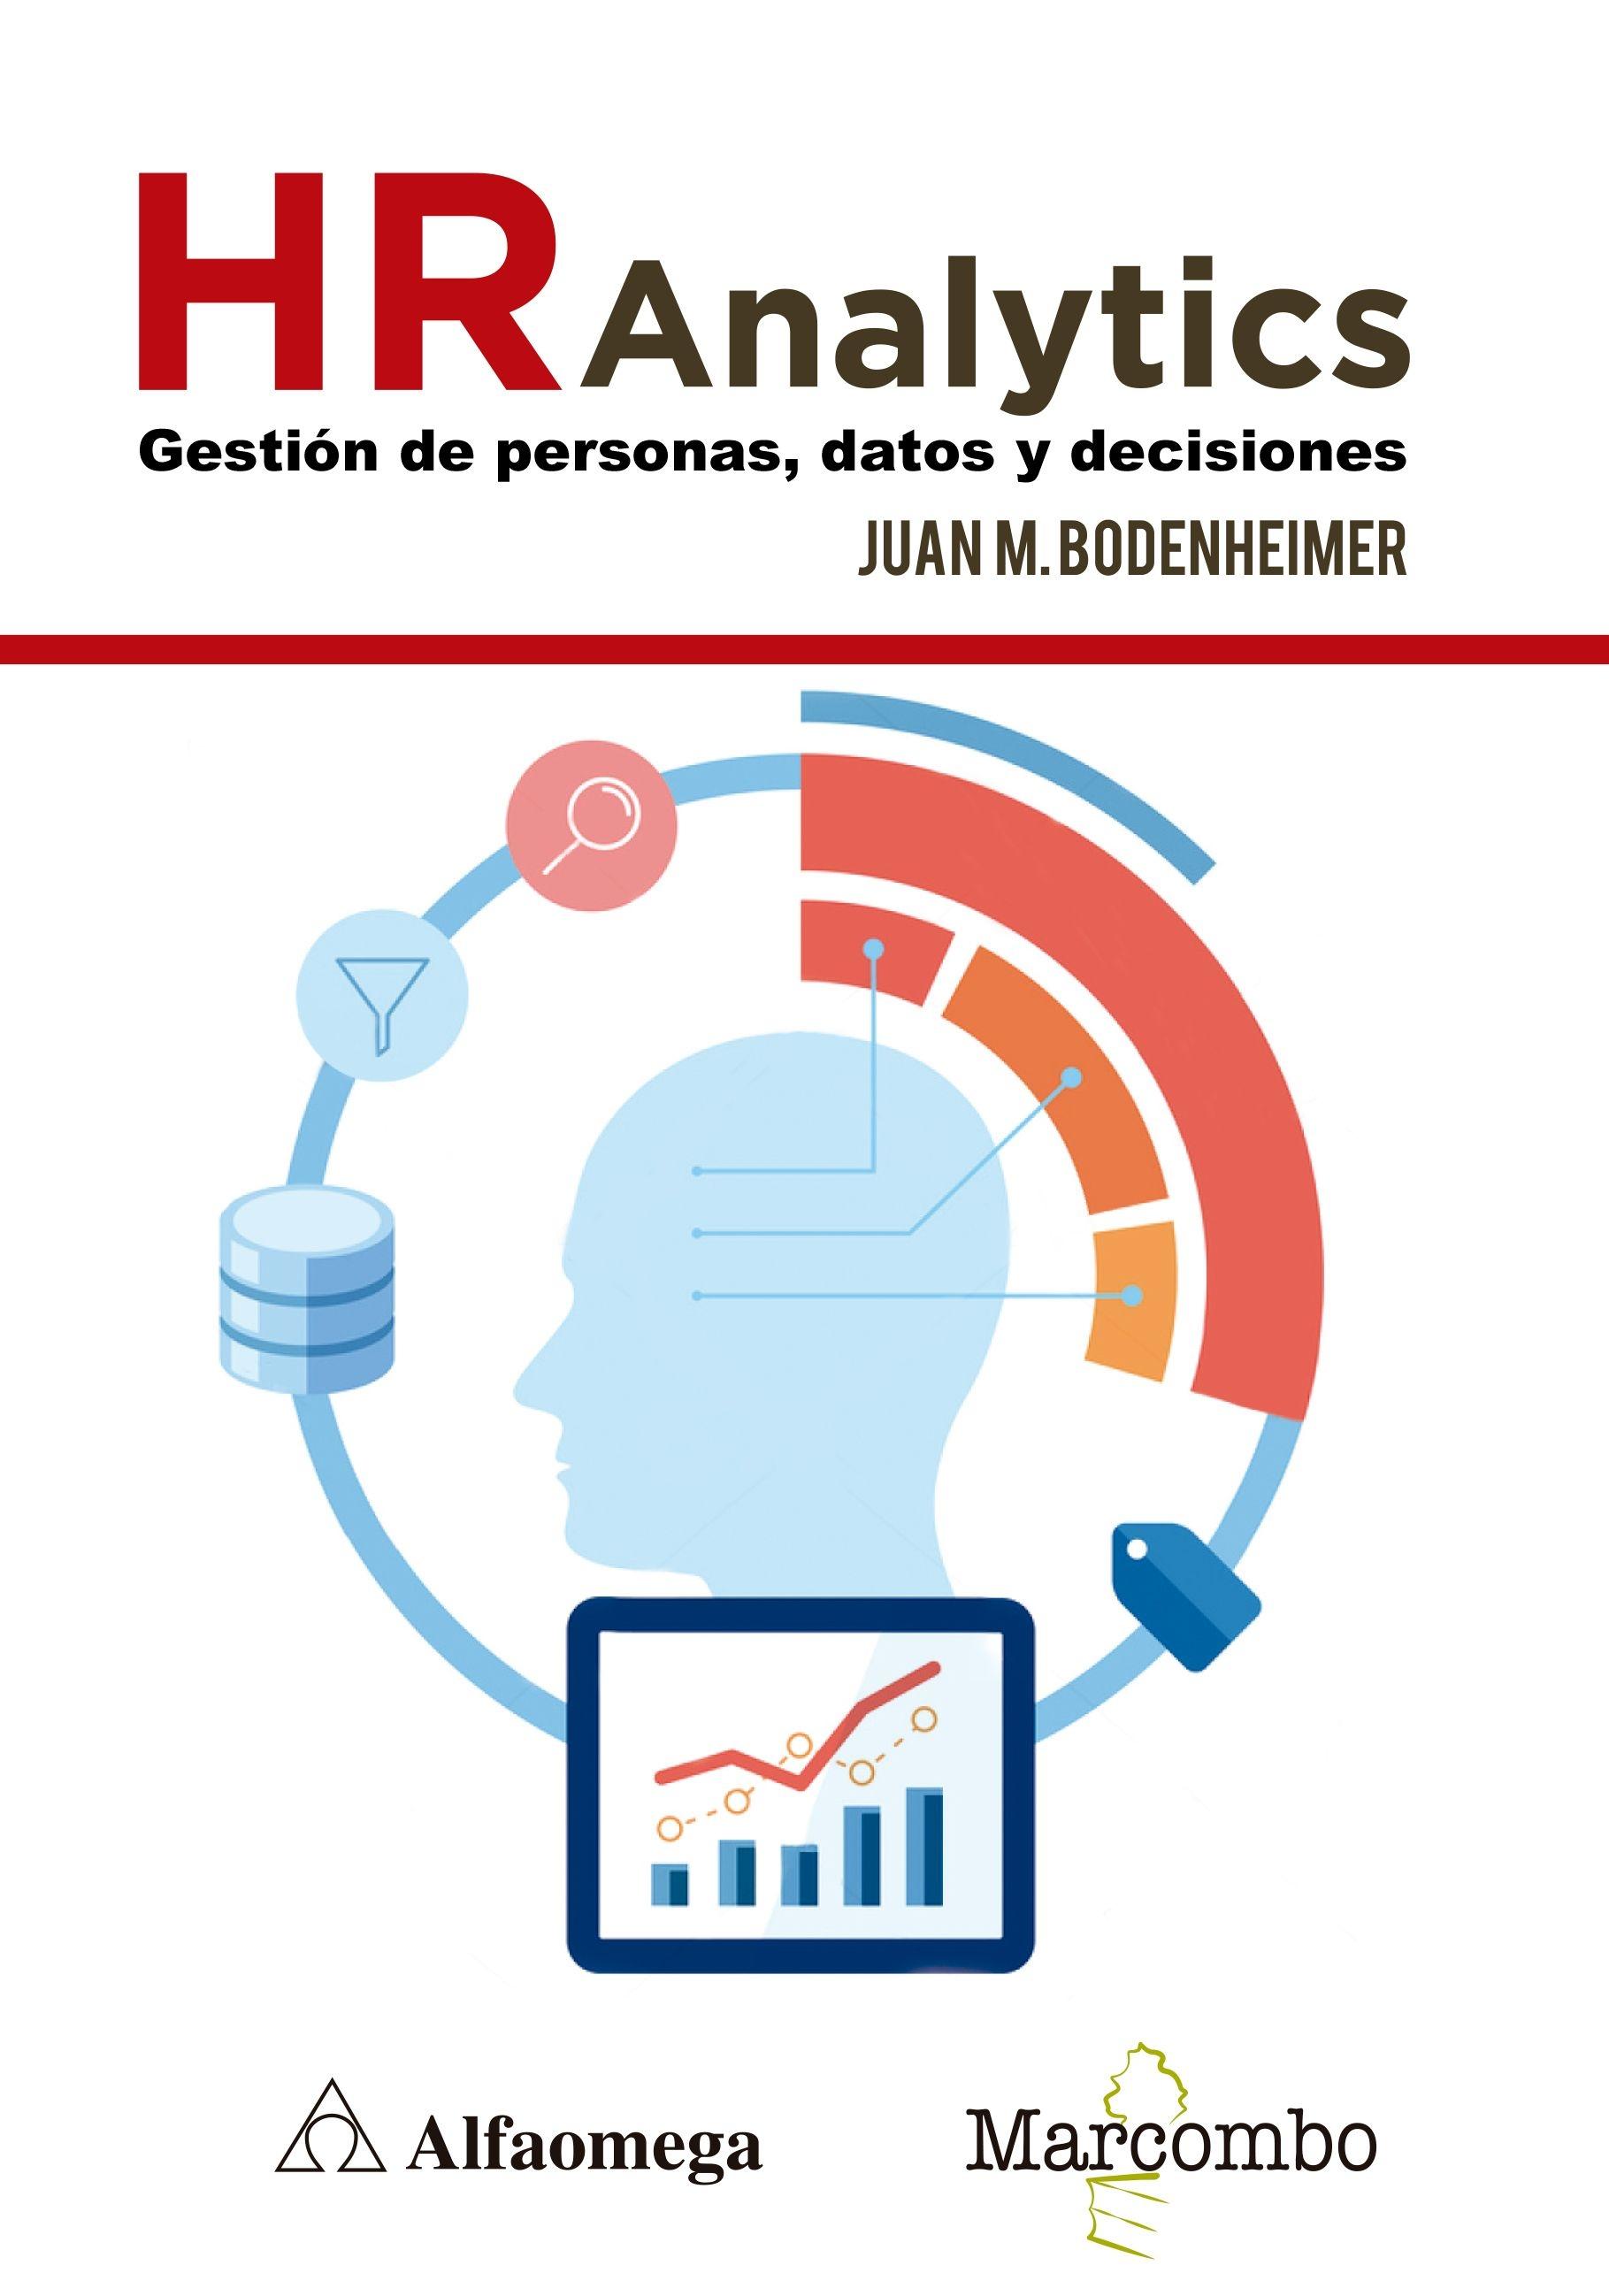 HR Analytics "Gestión de personas, datos y decisiones"